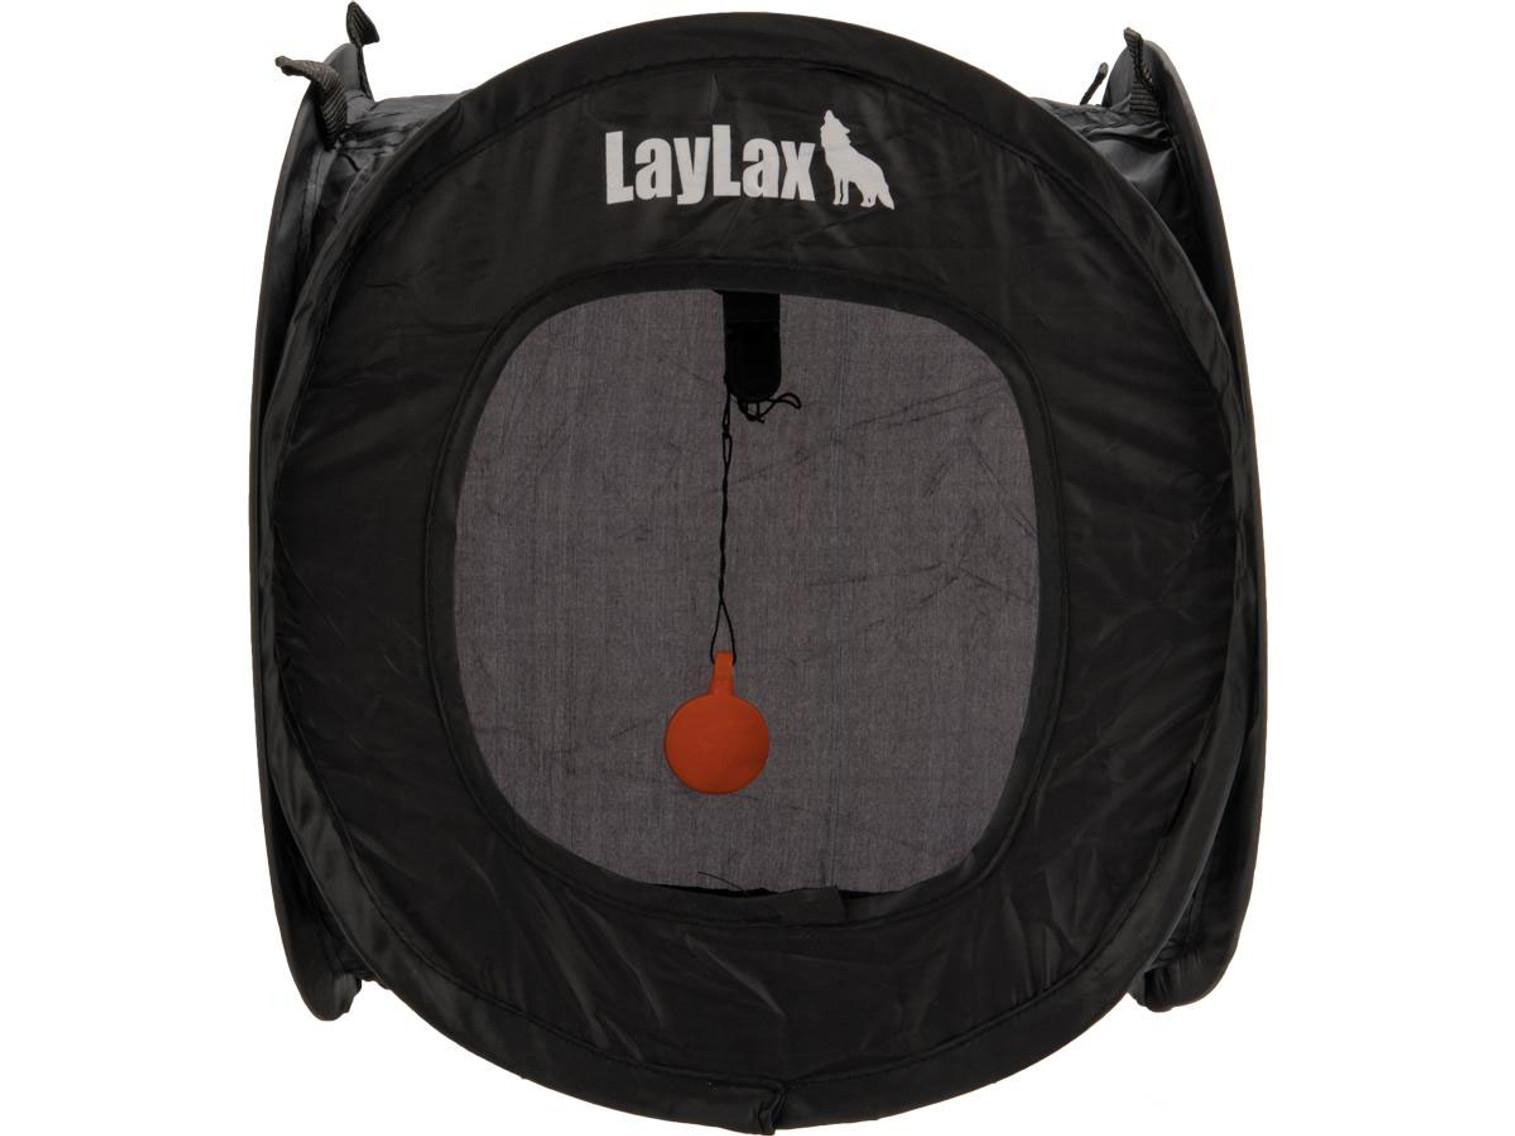 Laylax Satellite Shooting Target Box